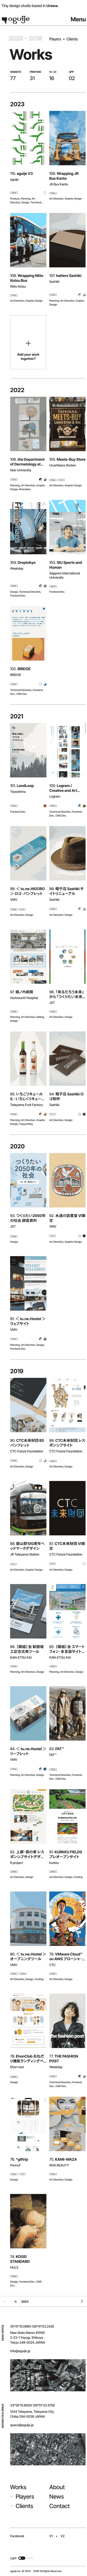 aguije | アグイジェ – 渋谷・館山・鎌倉・浦和が拠点の小さなデザインスタジオ。のモバイルサイズの画像